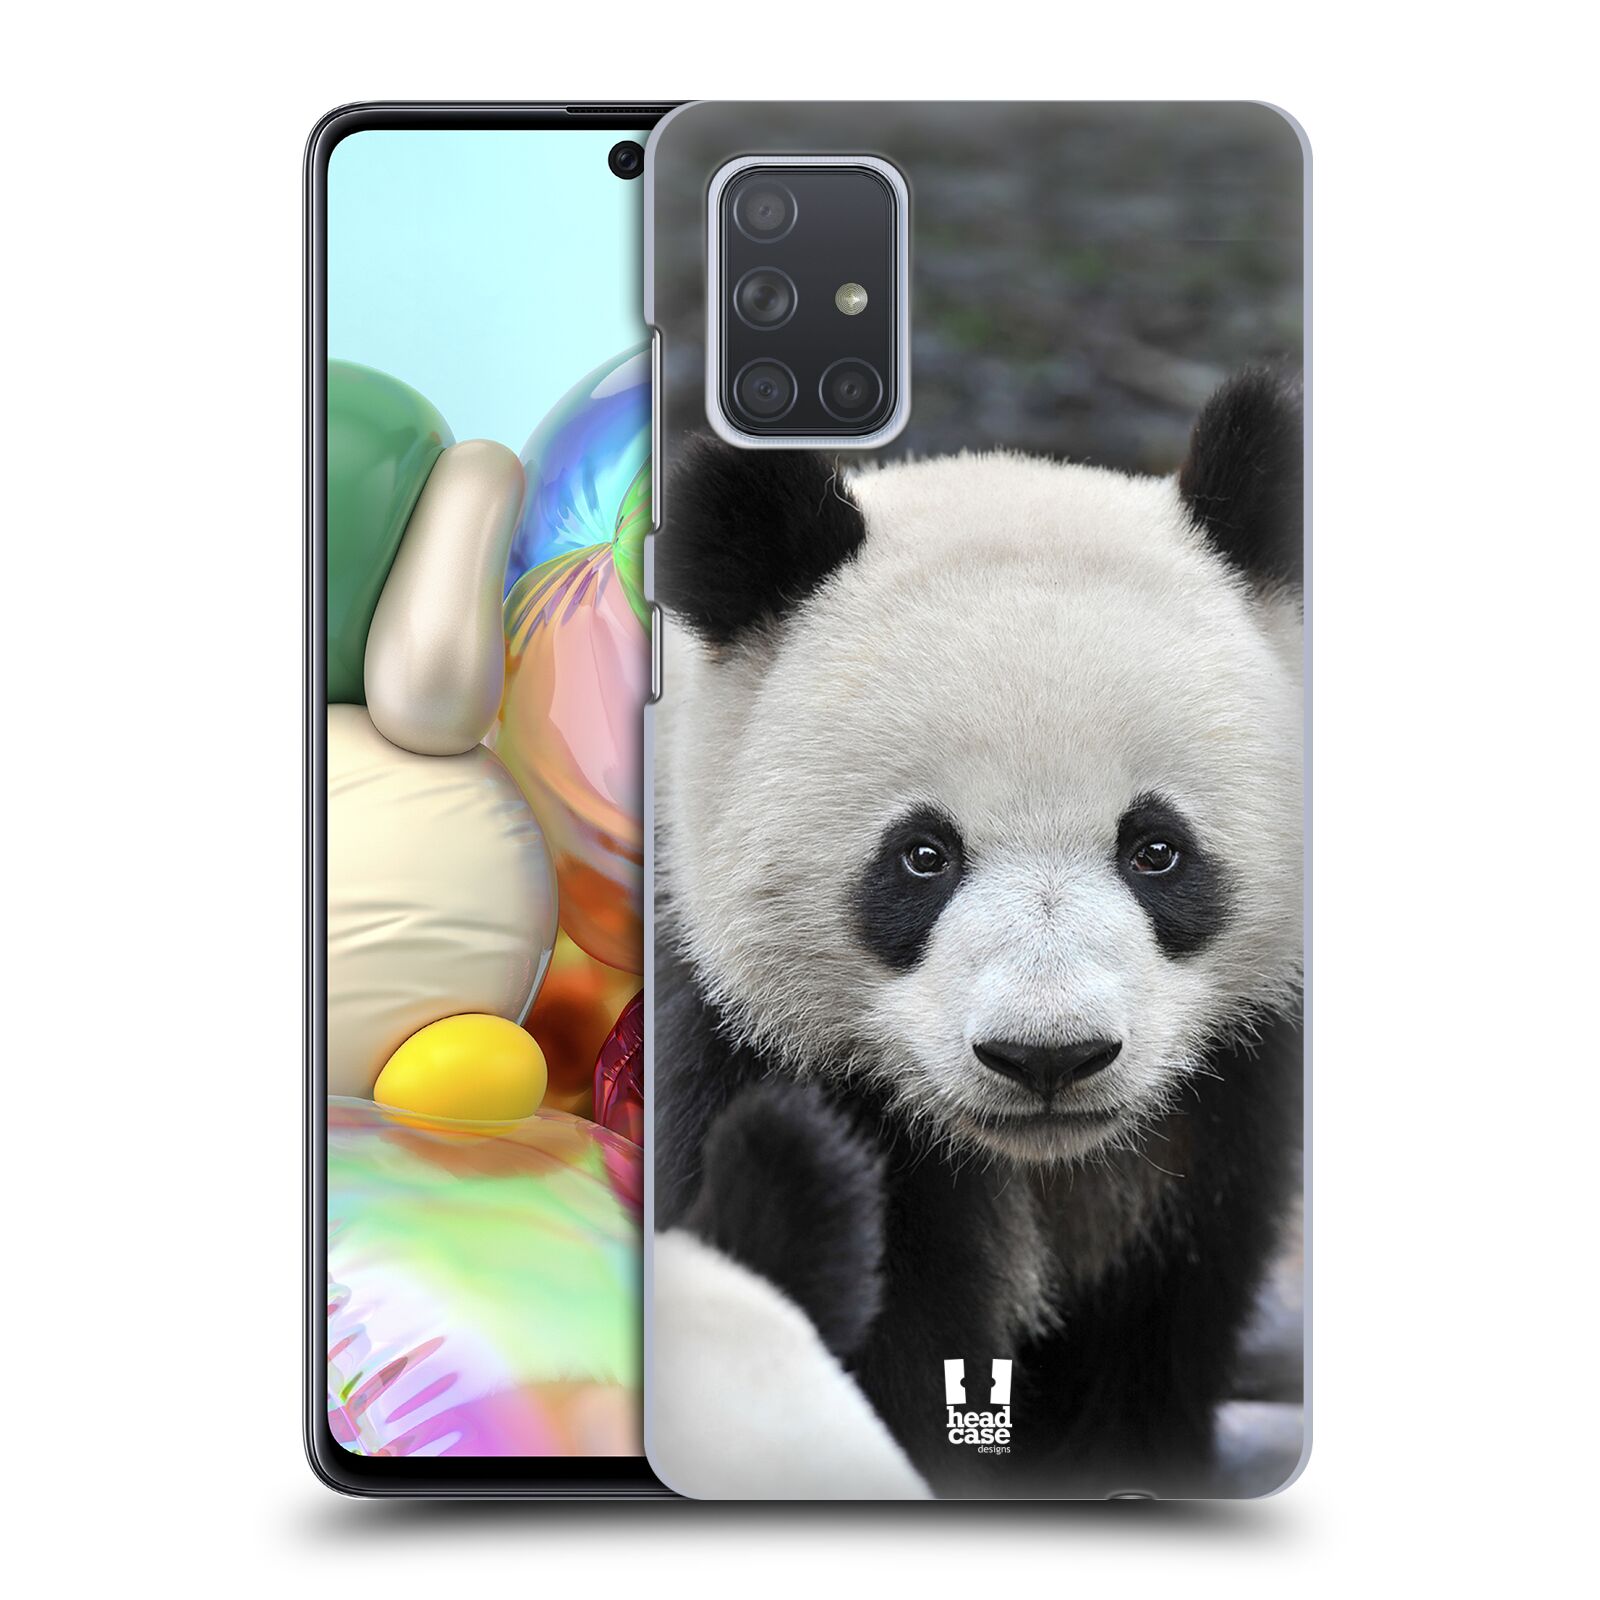 Zadní obal pro mobil Samsung Galaxy A71 - HEAD CASE - Svět zvířat medvěd panda